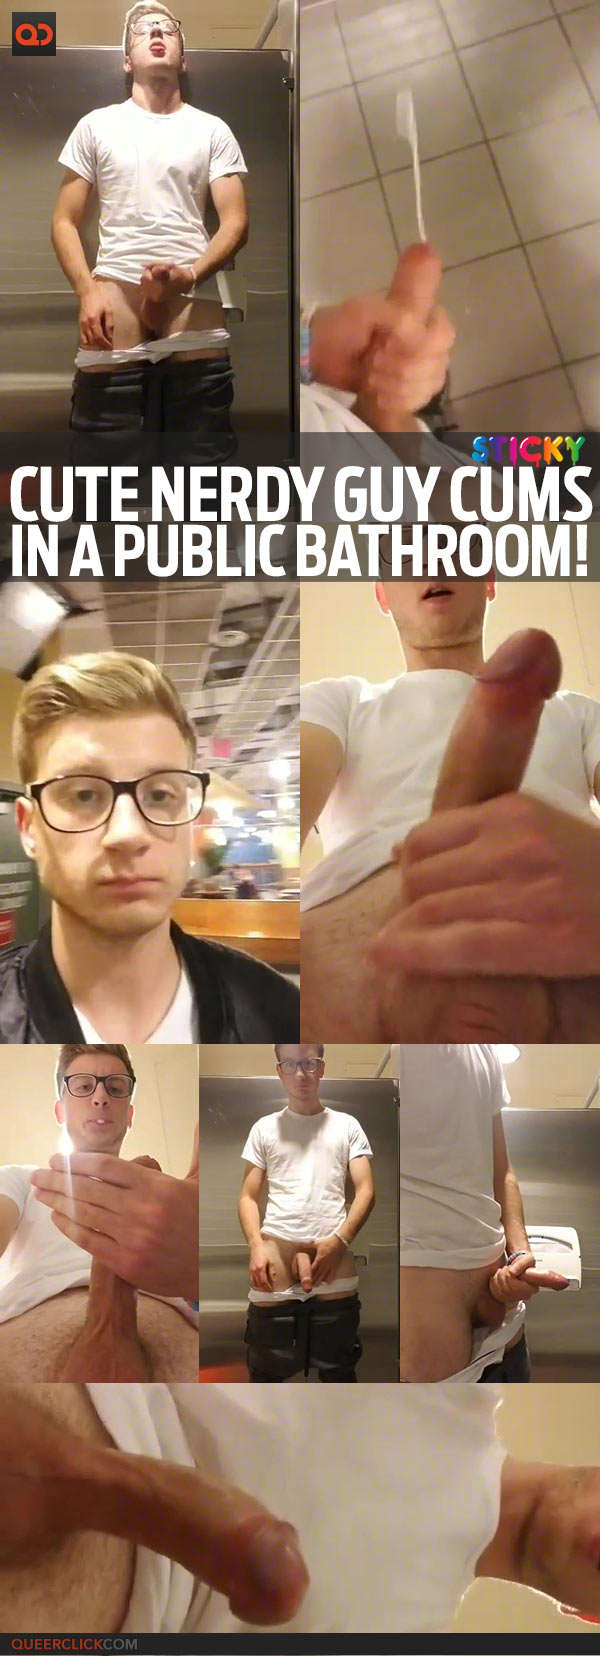 Cute Nerdy Guy Cums In A Public Bathroom!